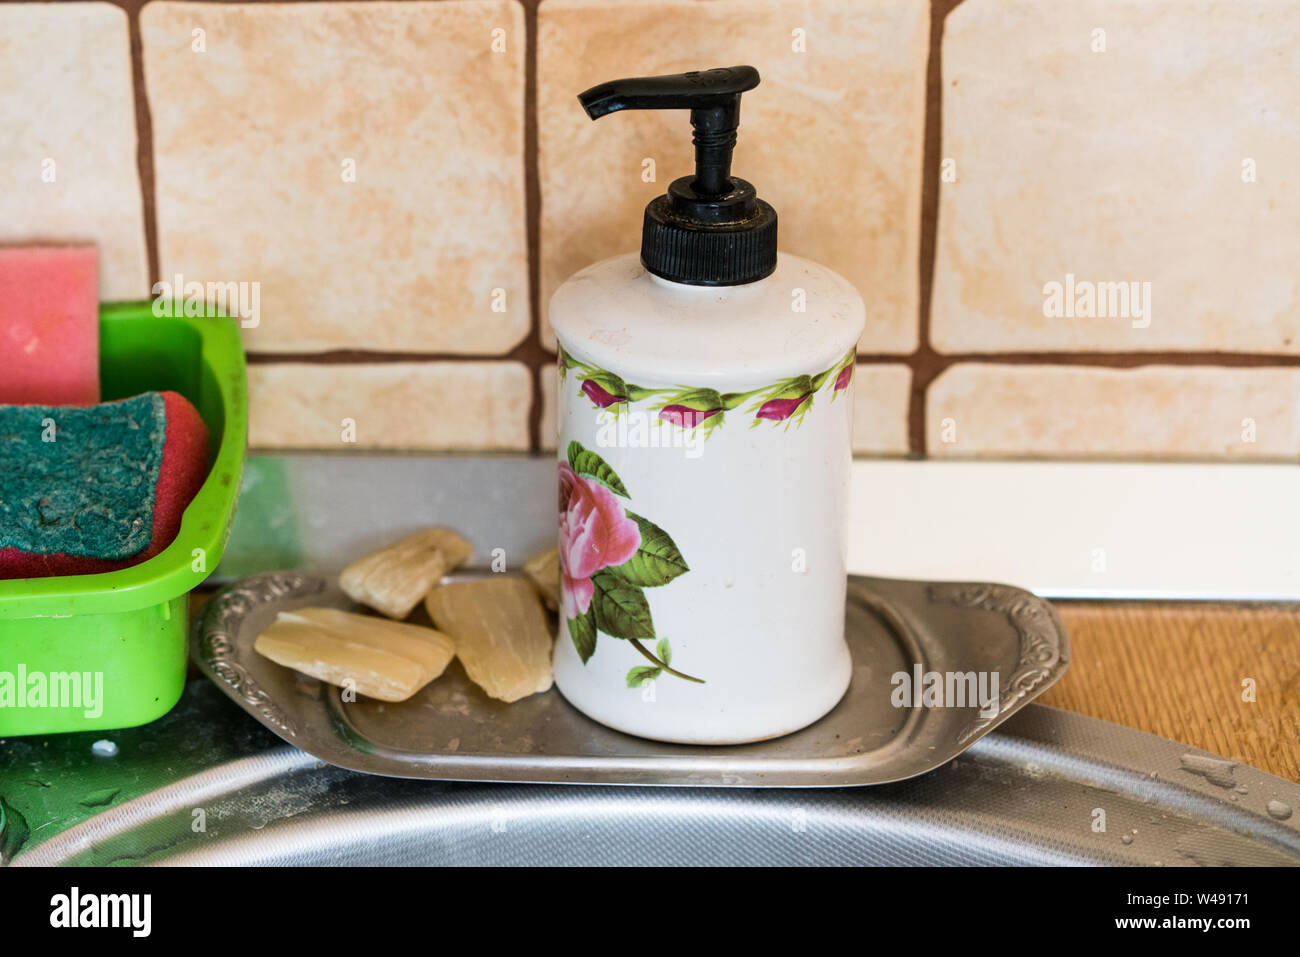 Due tipologia di sapone e spugne in cucina Foto Stock